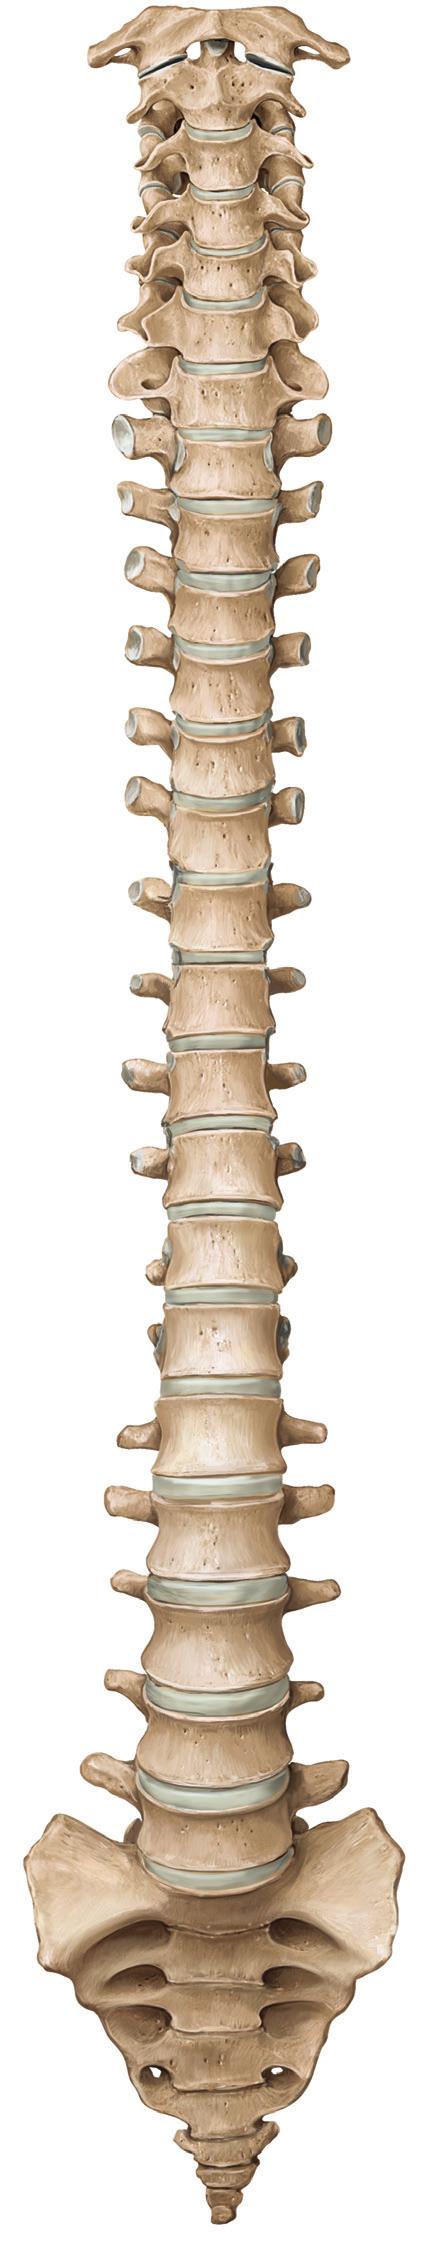 Atlas (C1) C1-C7 vertebrae Atlas (C1) Axis (C2) Axis (C2) Spinous es T1 Vertebra prominens (C7) T1-T12 vertebrae es Intervertebral foramina L1 es L1-L5 vertebrae Intervertebral disc S1-S5 vertebrae